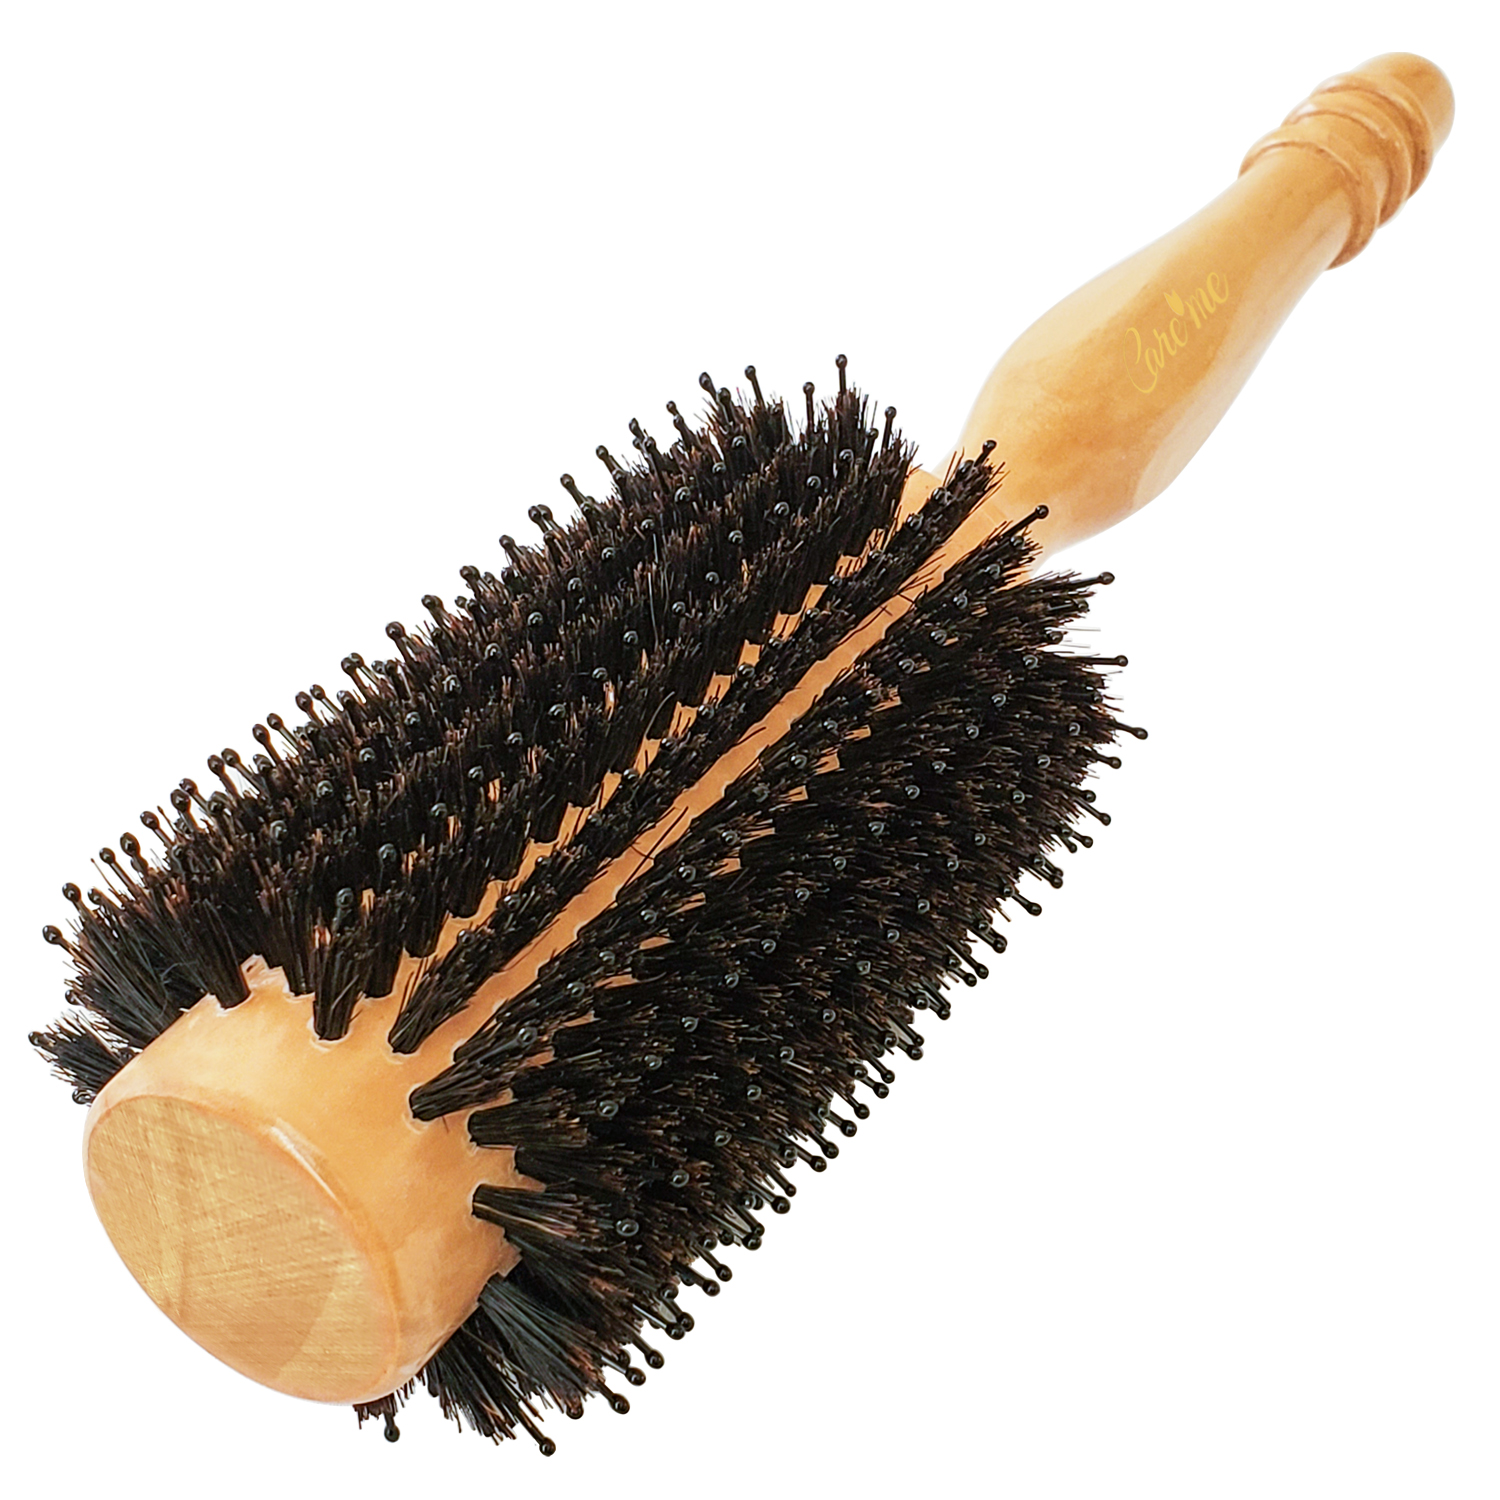 https://caremeus.com/wp-content/uploads/2019/12/wood-round-hair-brush.jpg